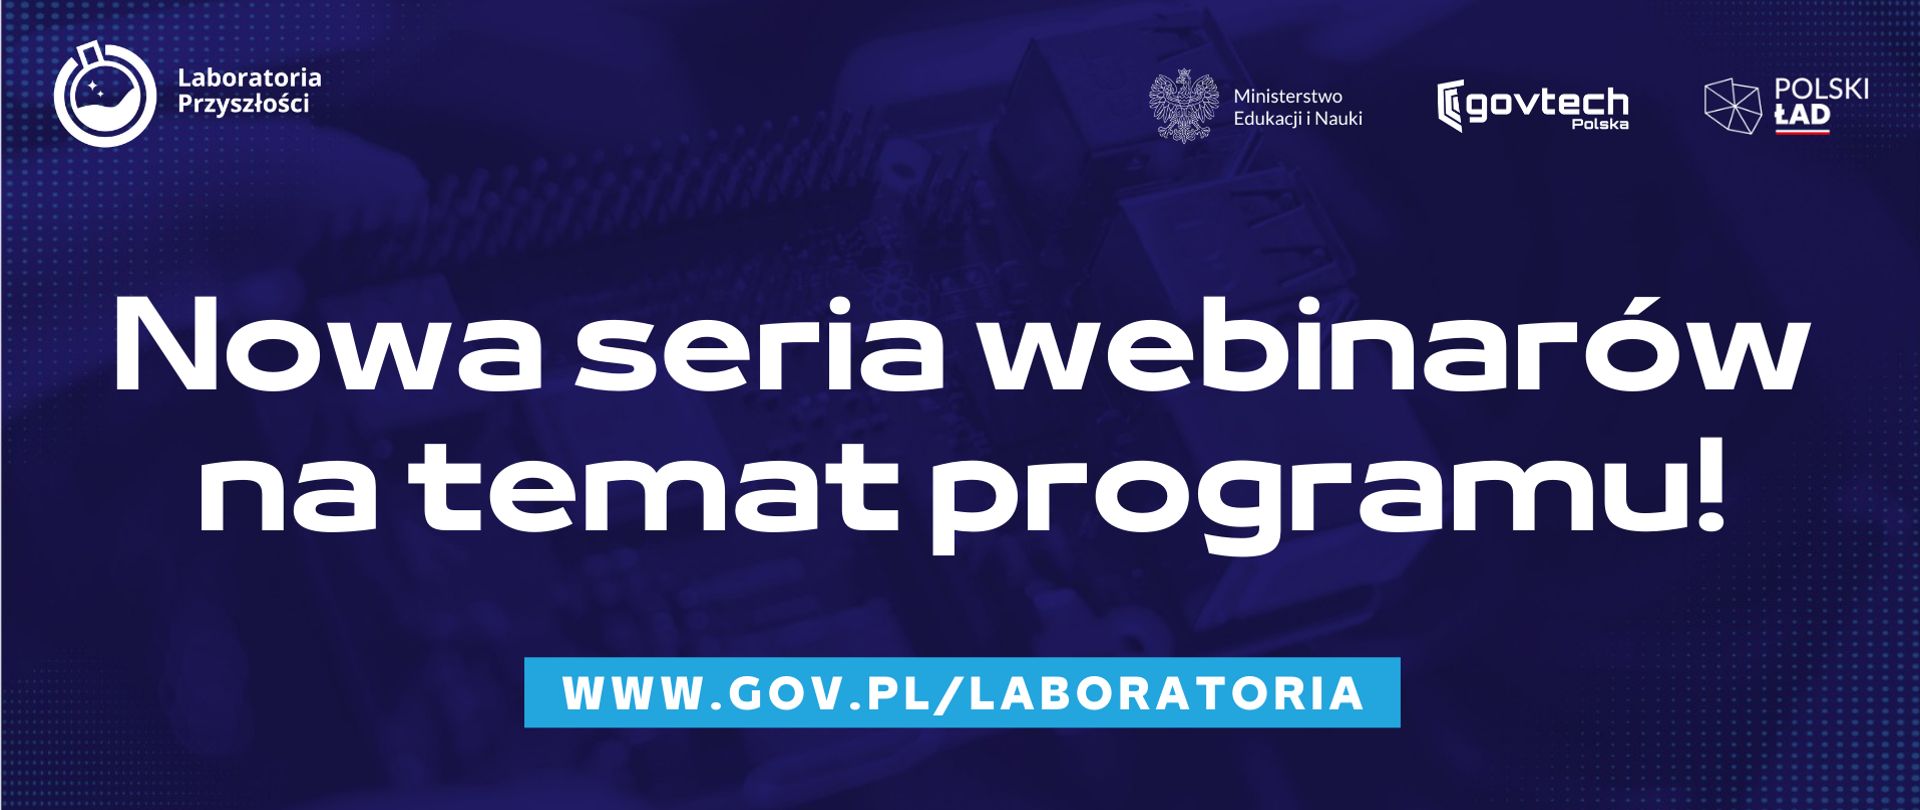 Nowa seria webinarów na temat programu!
www.gov.pl/laboratoria